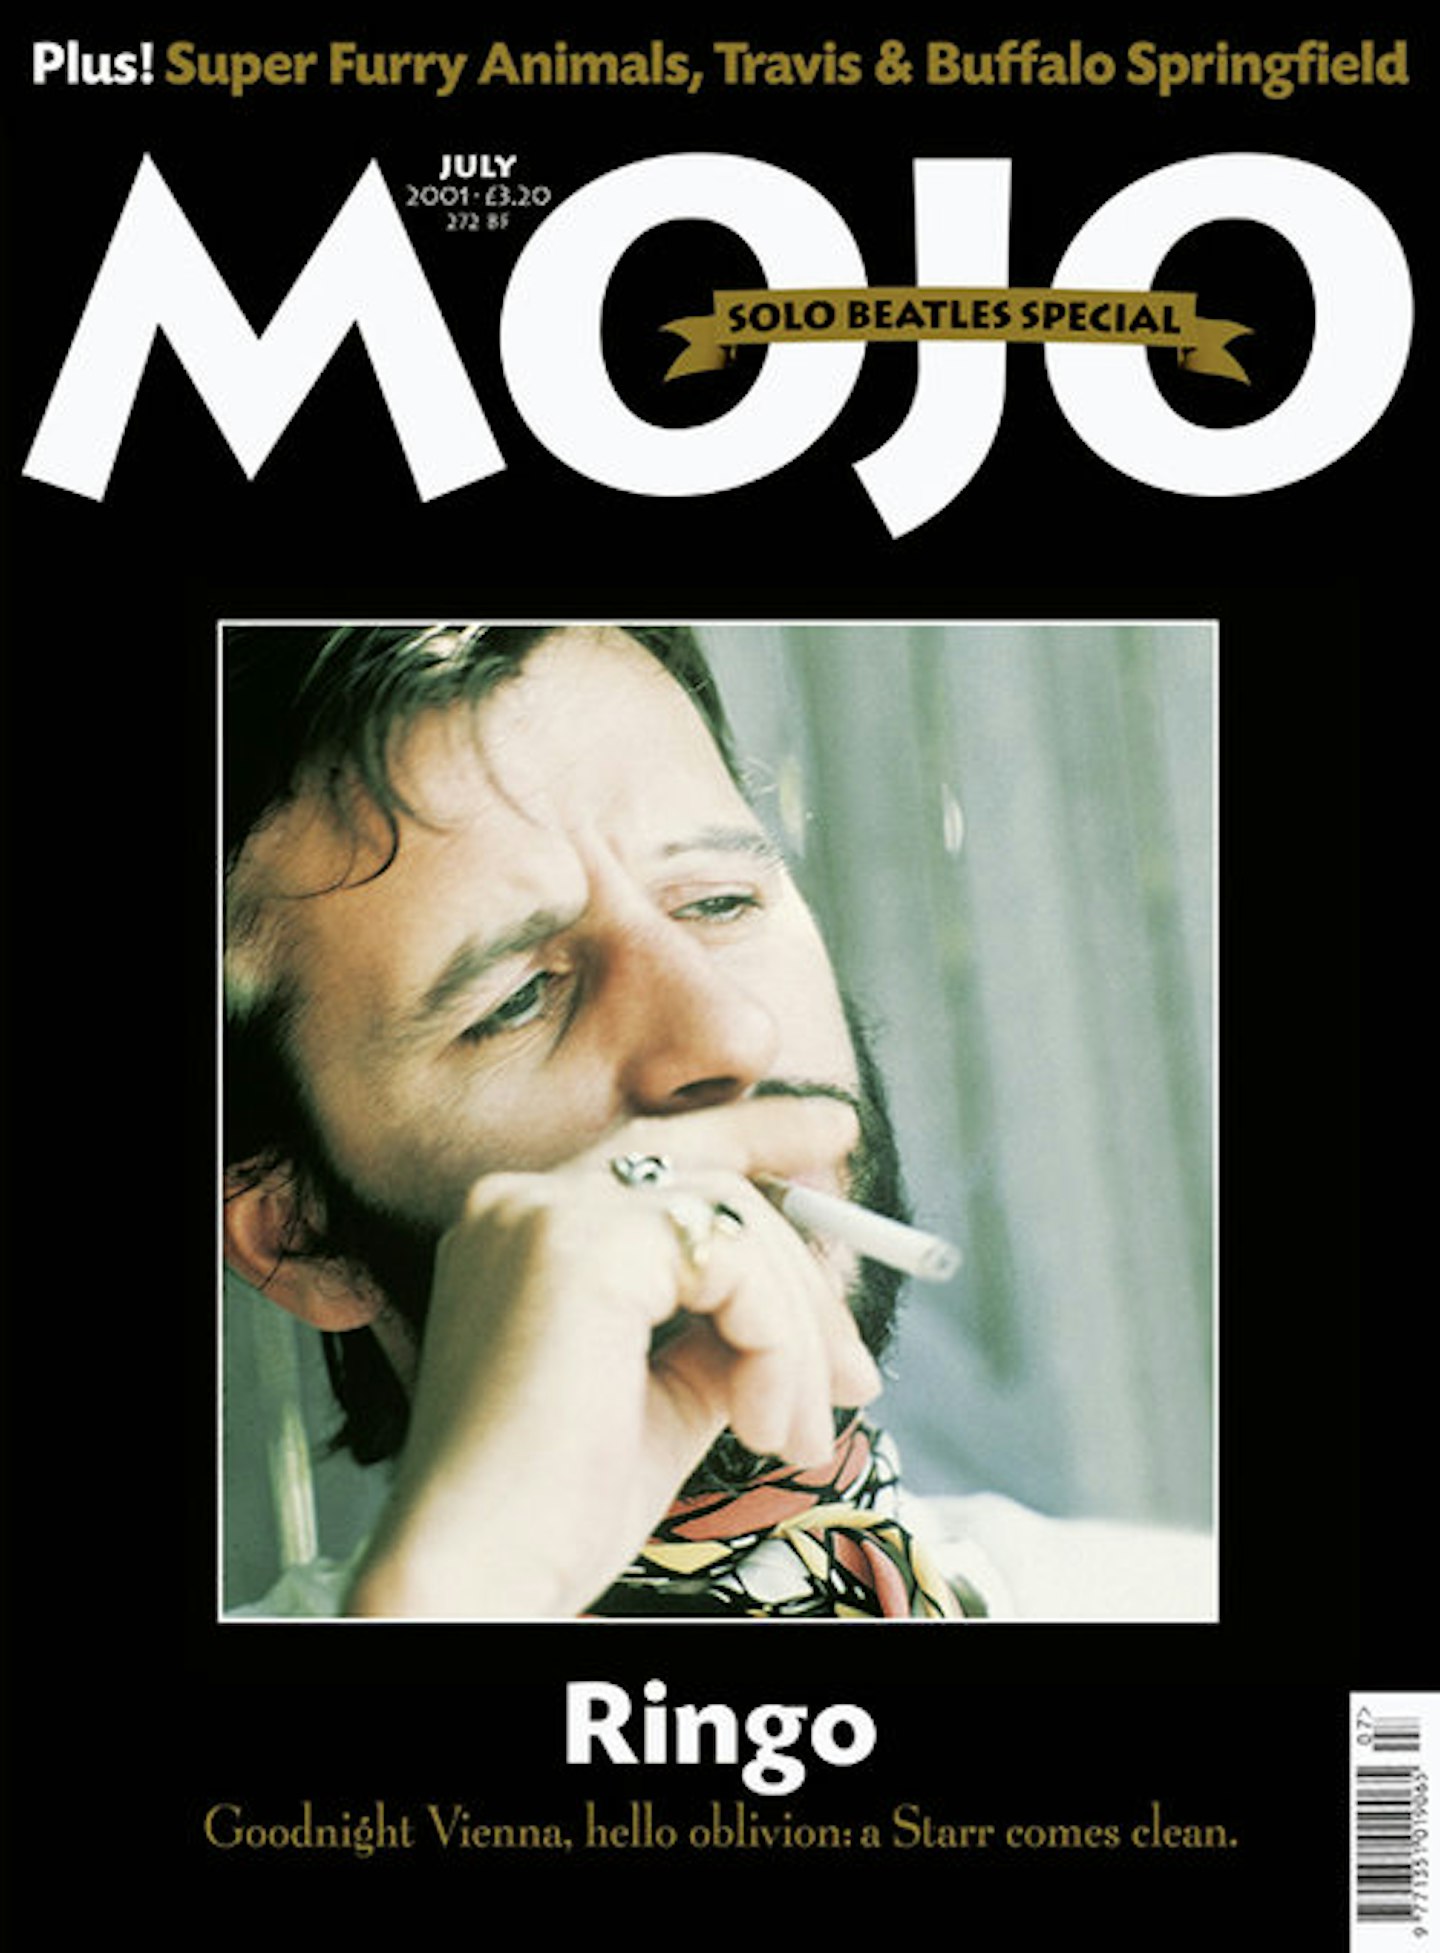 MOJO Issue 92 / July 2001 / Ringo